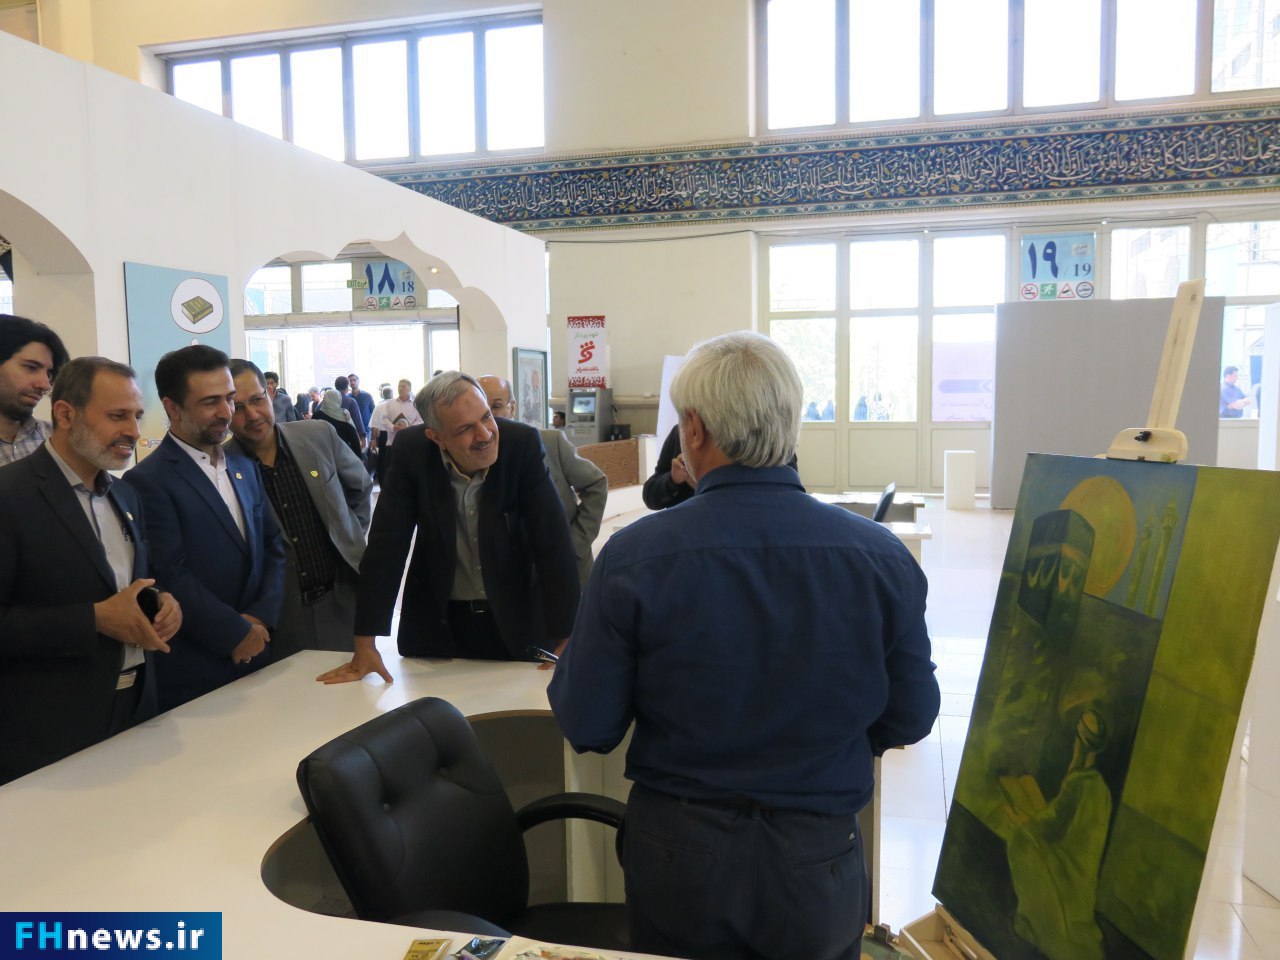 پایان فعالیت موزه هنرهای دینی امام علی (ع) در بیست و پنجمین نمایشگاه بین المللی قرآن کریم